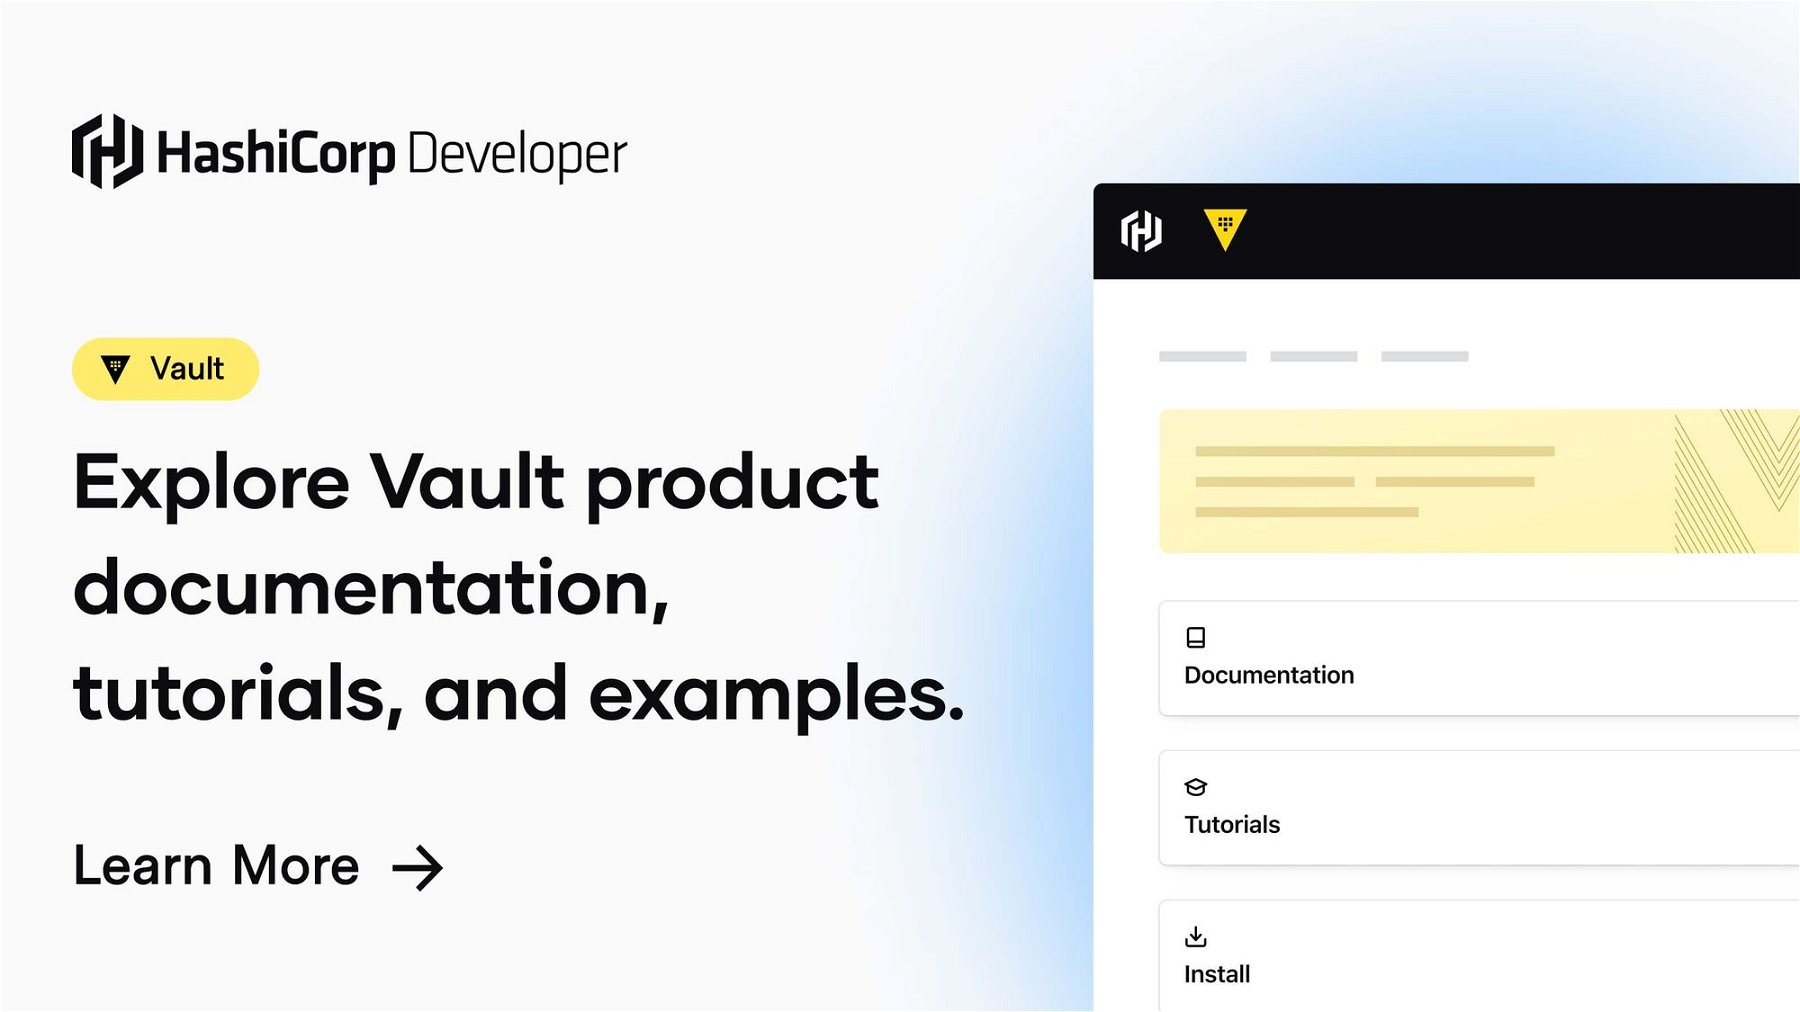 Documentation | Vault | HashiCorp Developer